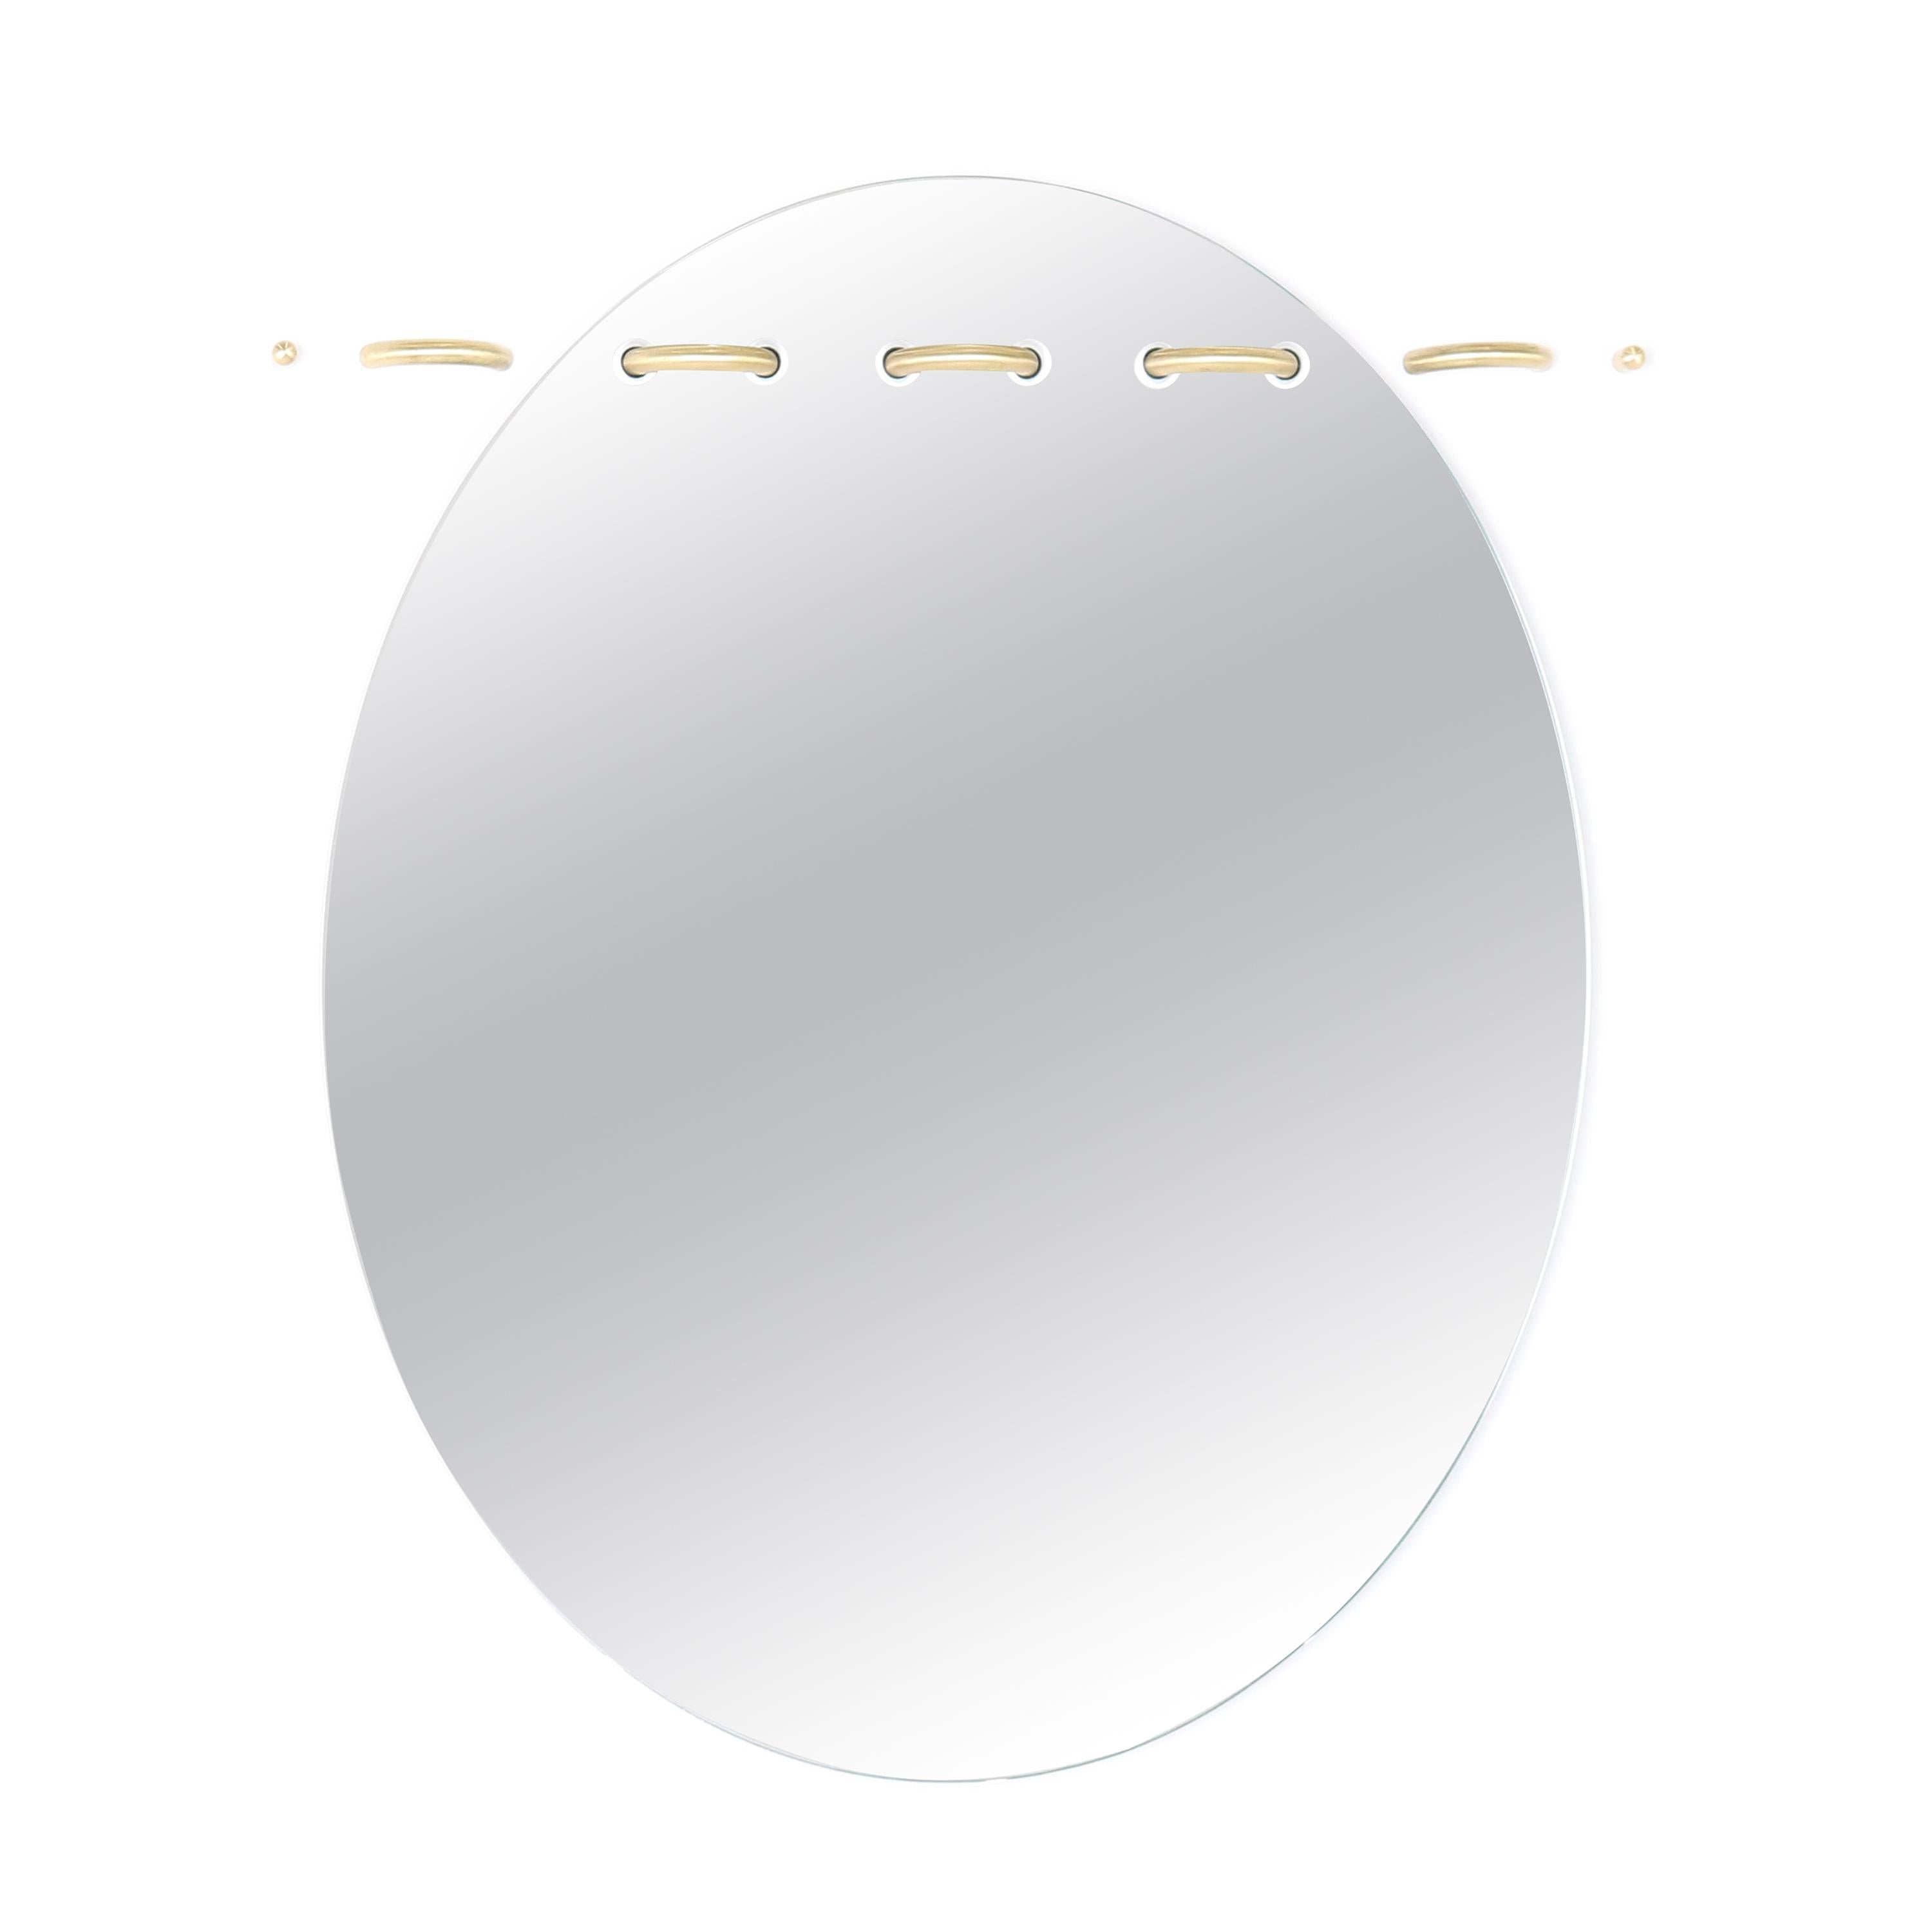 Spiegel mit Nähoberflächen, oval mit Messingstichen von Debra Folz